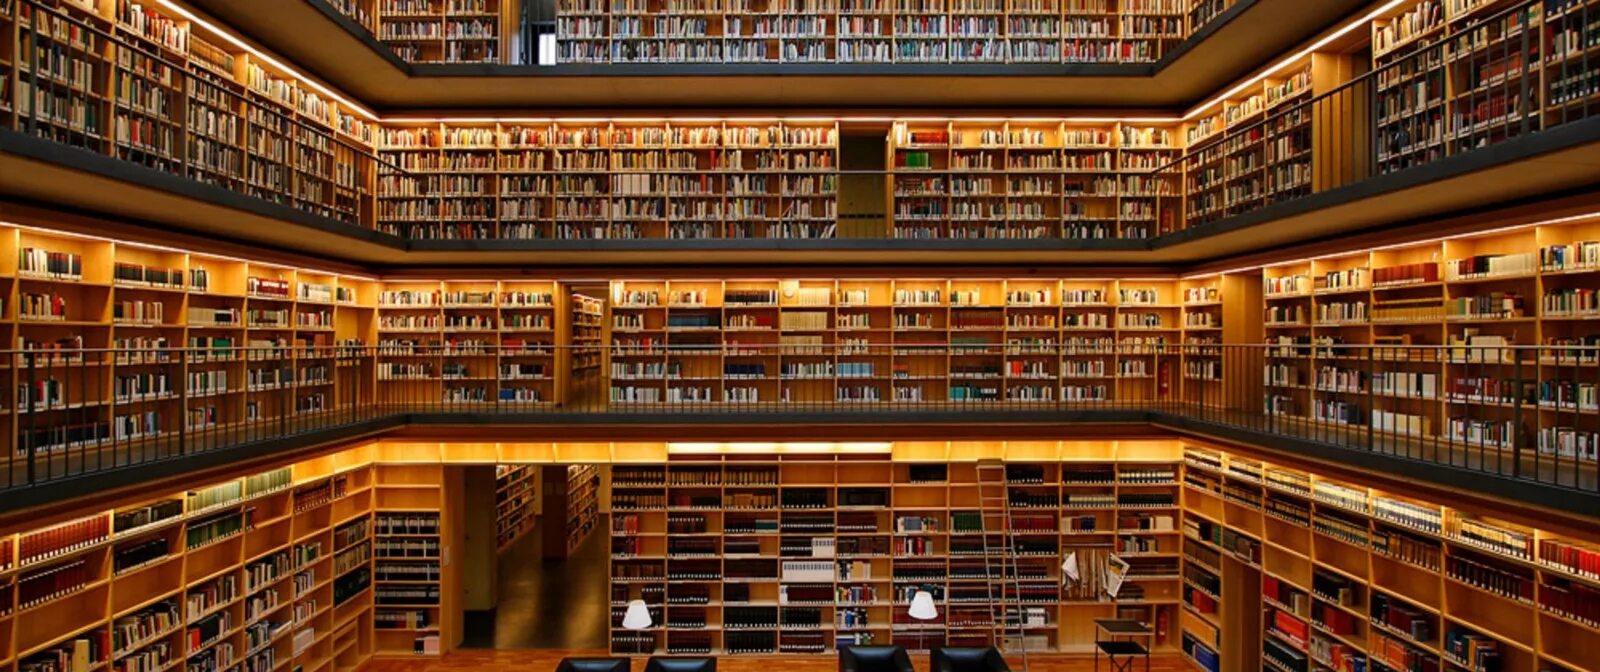 Xz library. 19-Ярусное книгохранилище РГБ. Библиотека Phillips Exeter. Красивая библиотека. Большая библиотека.